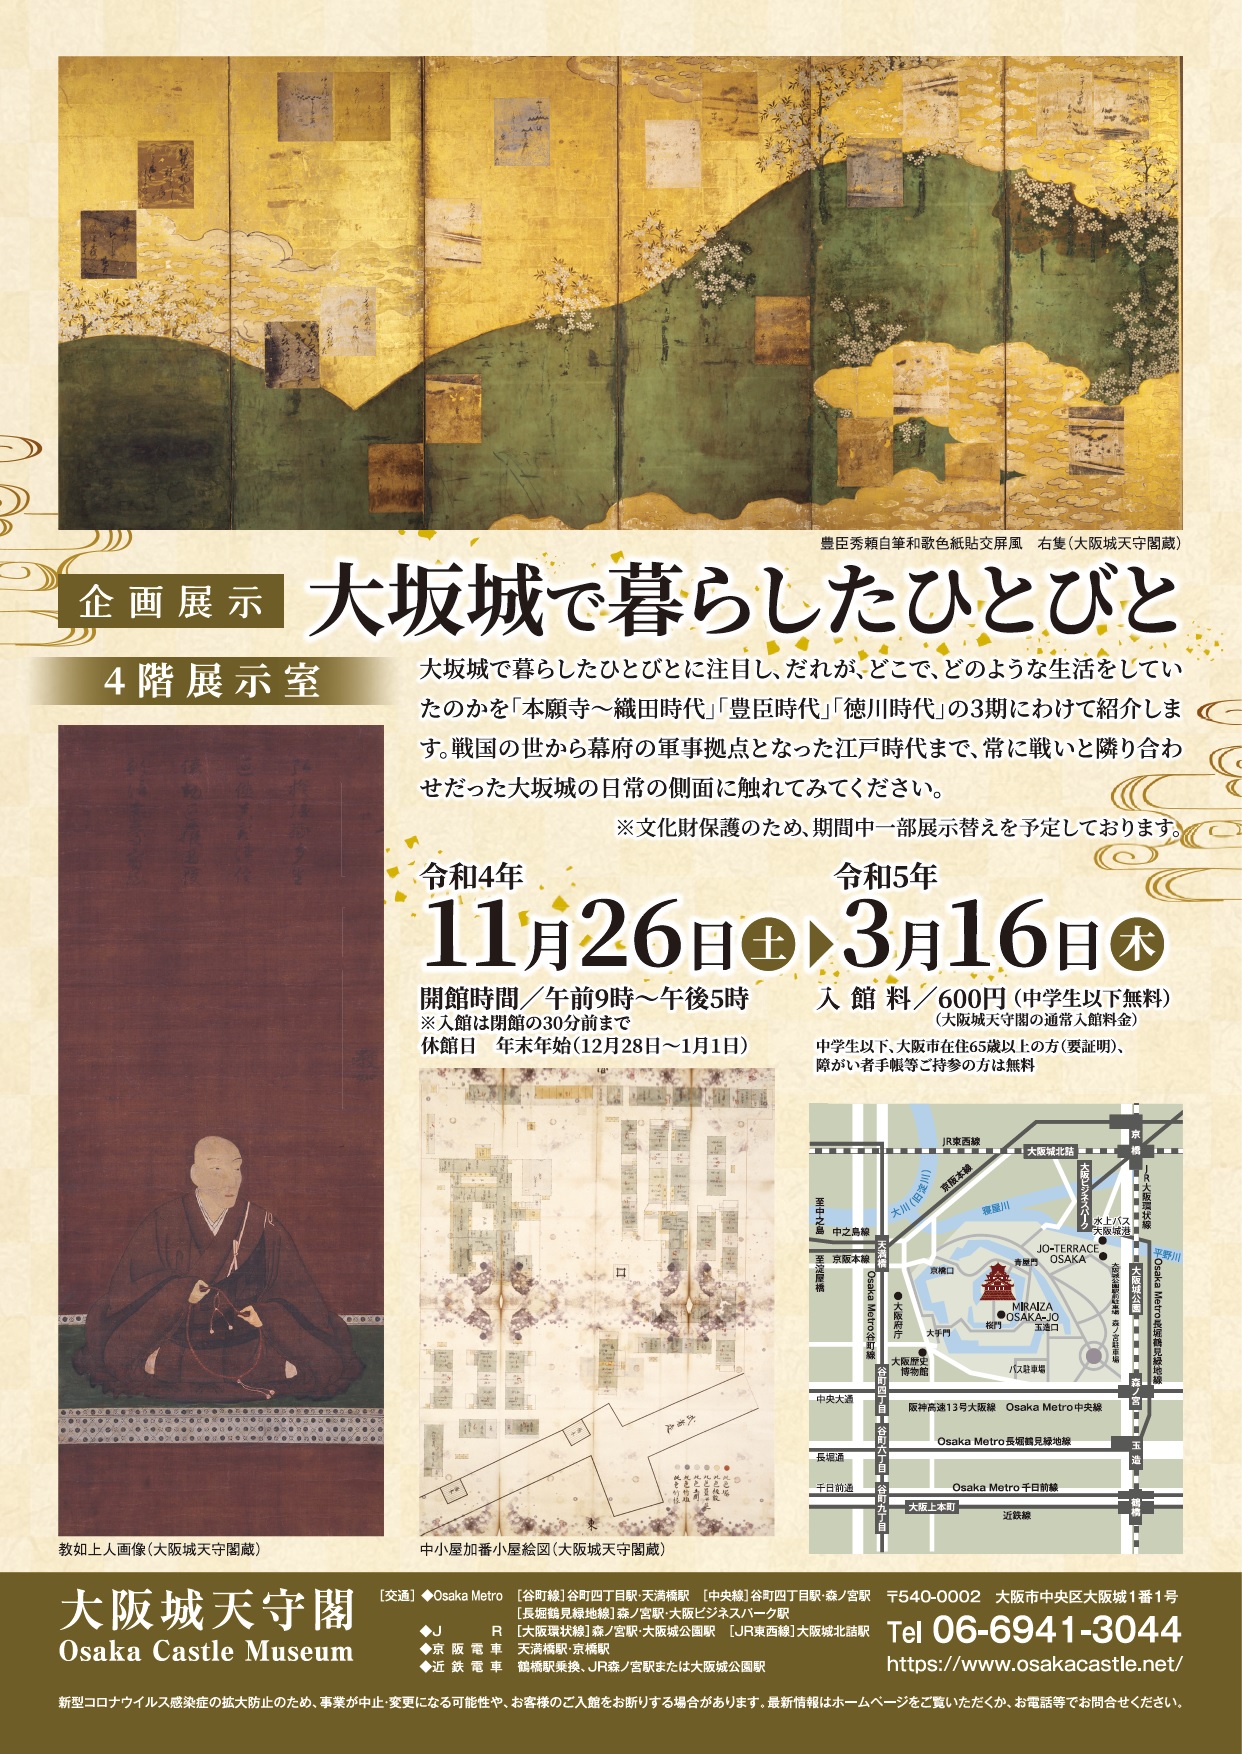 企画展示「大坂城で暮らしたひとびと」